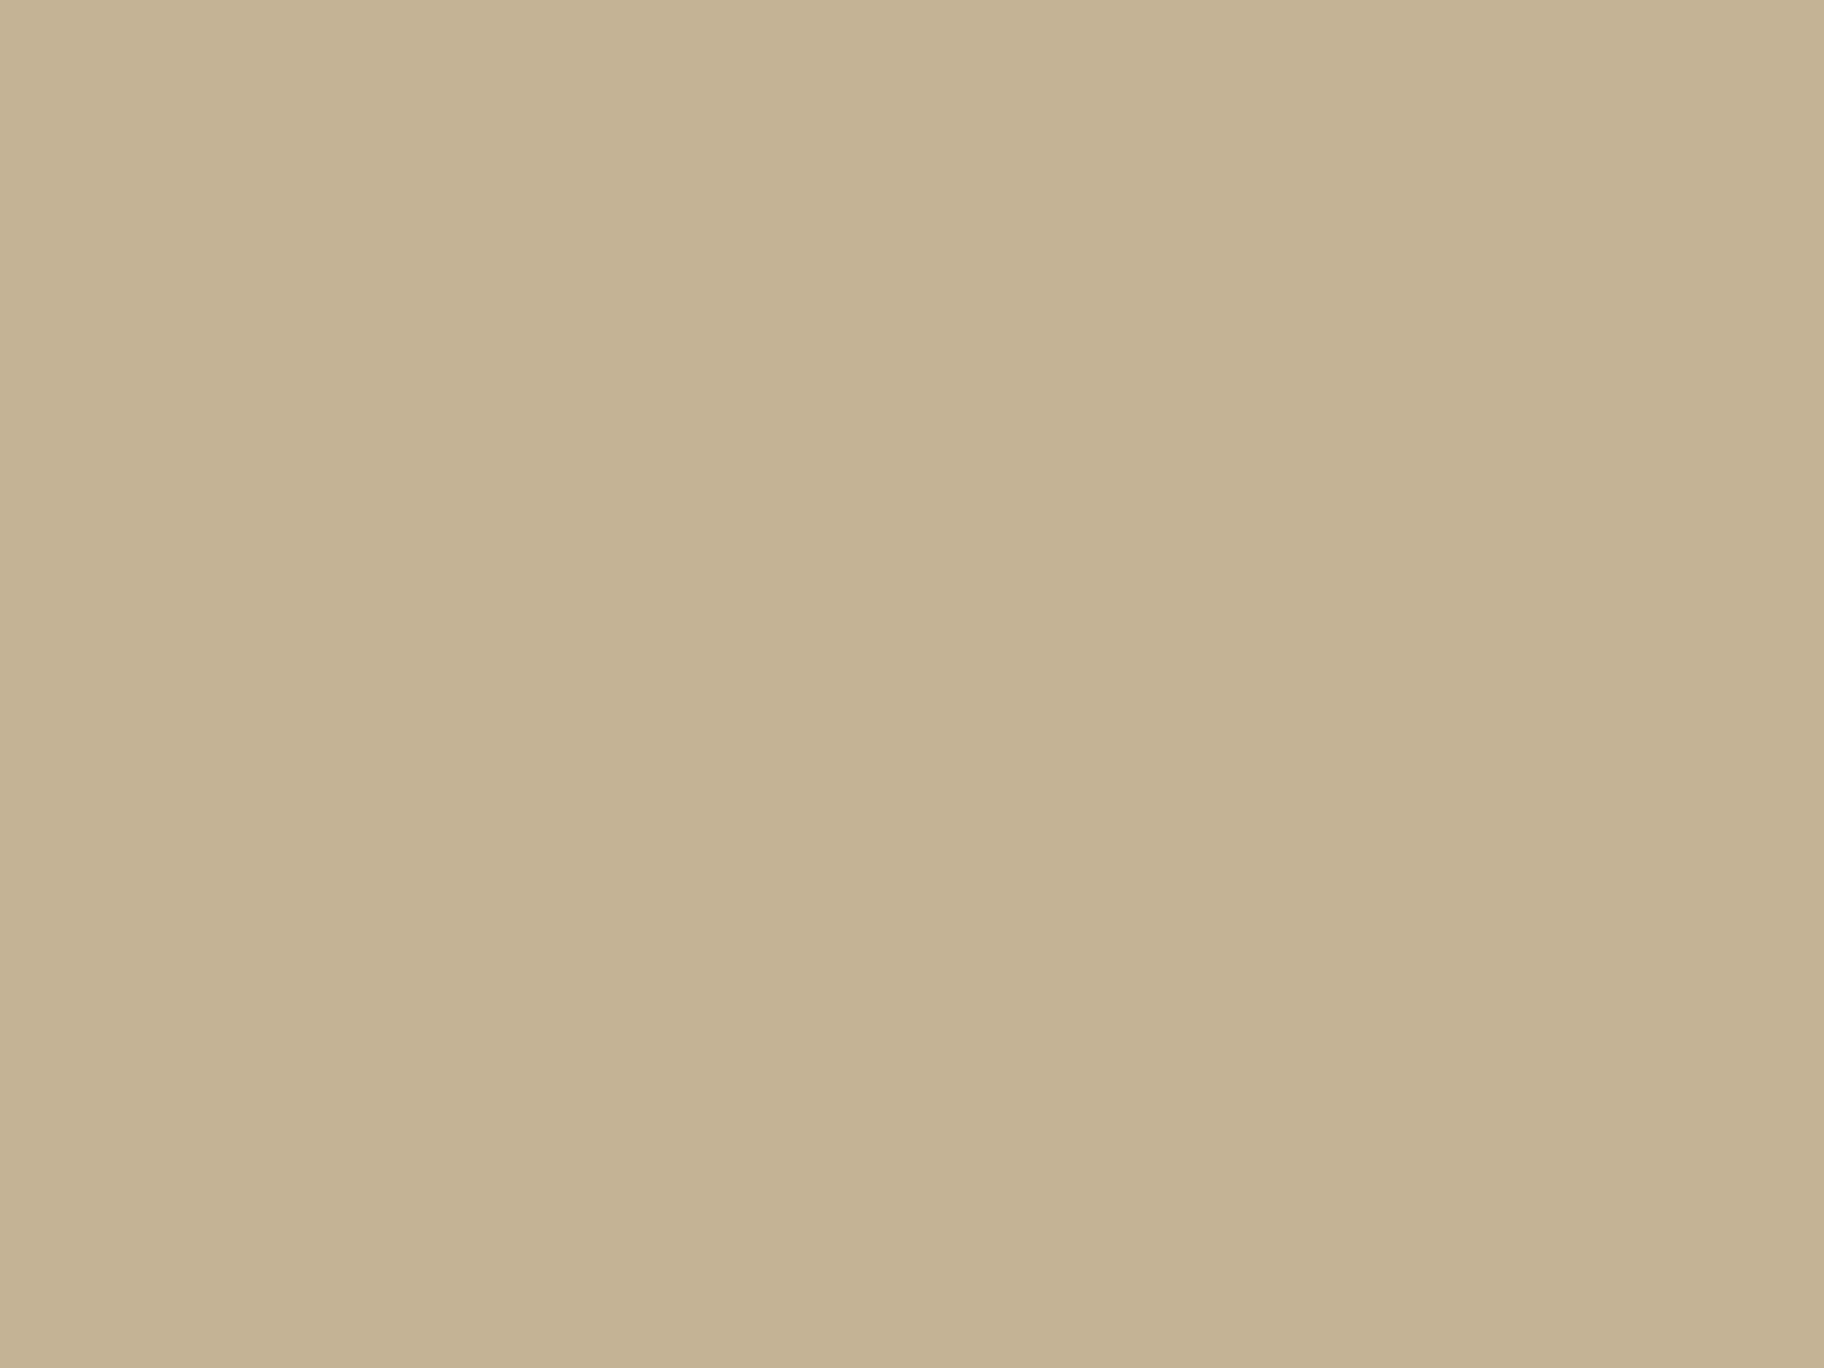 Михай Зичи. Бал в Концертном зале Зимнего дворца во время официального визита шаха Насир-ад-Дина в мае 1873 года (фрагмент). 1873. Государственный Эрмитаж, Санкт-Петербург